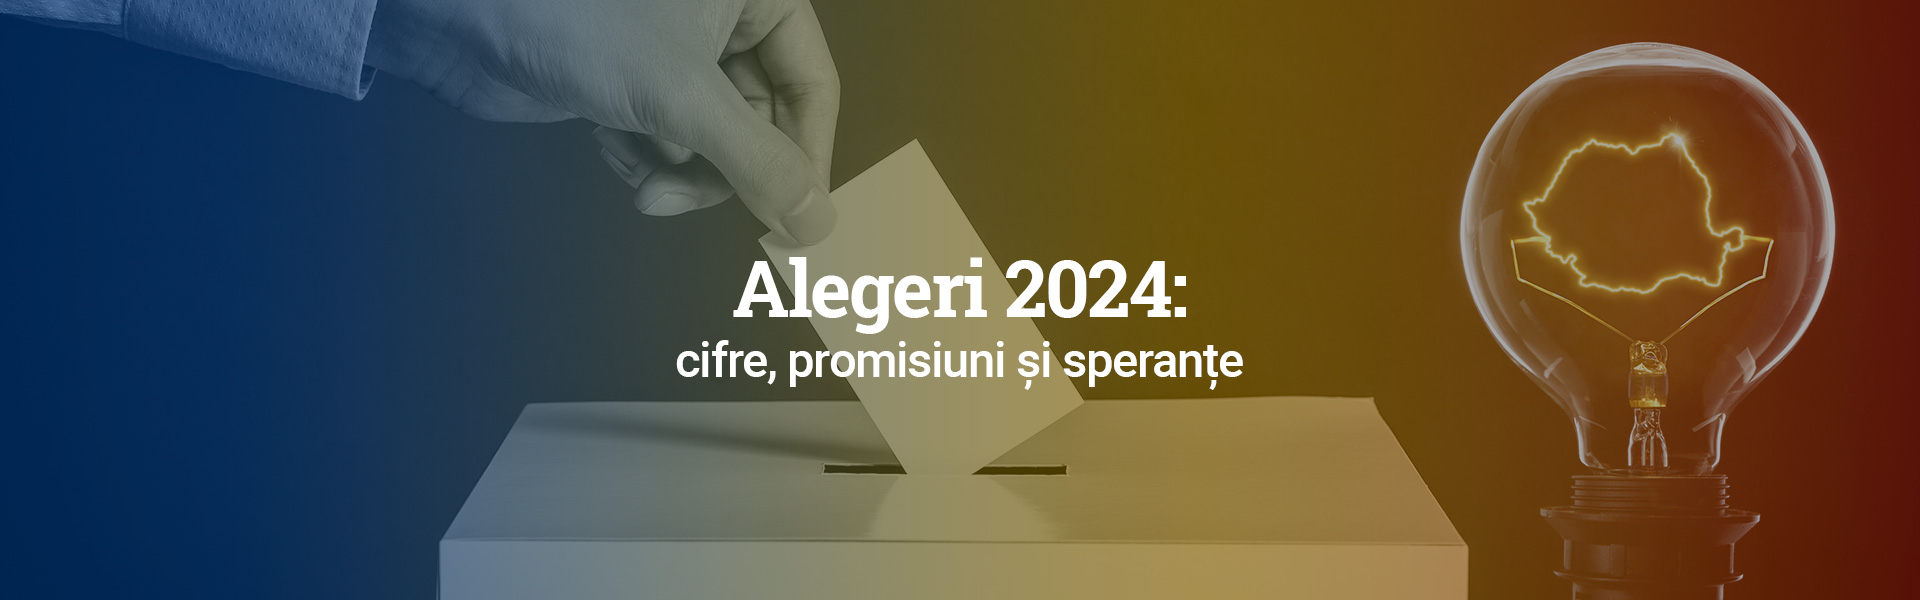 Alegeri 2024: cifre, promisiuni și speranțe